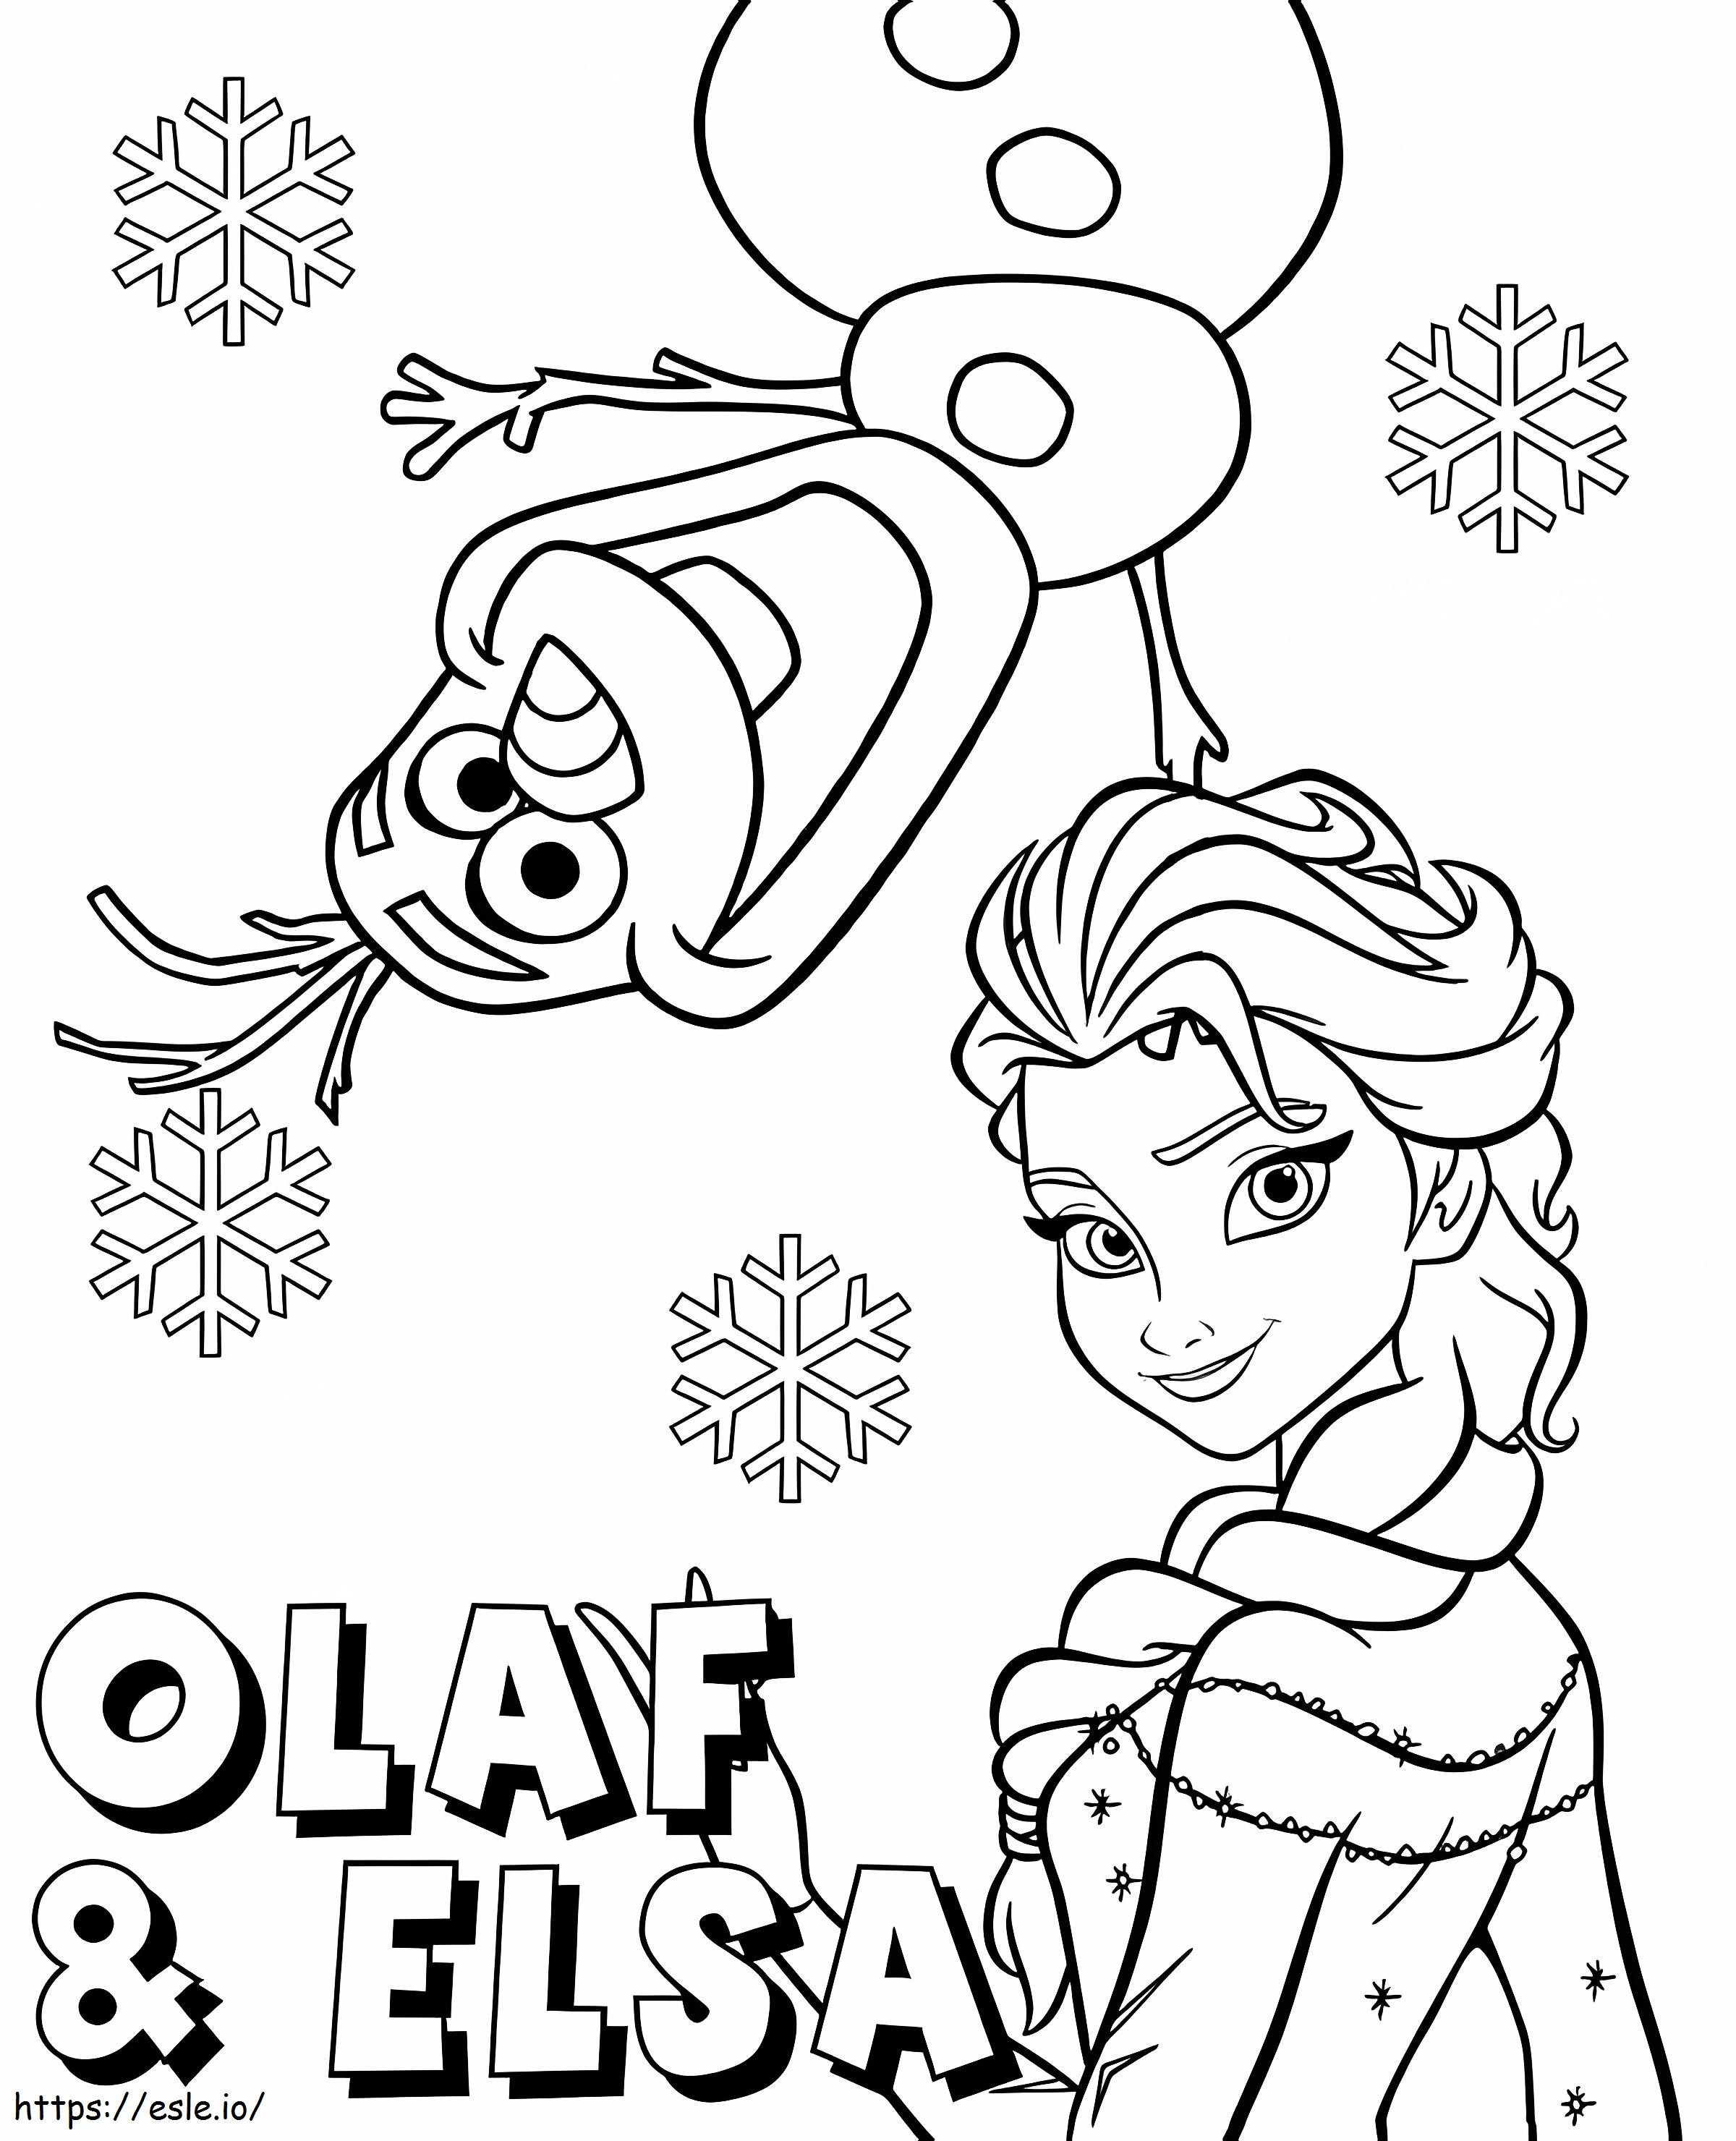 Stelle dich Elsa und Olaf ausmalbilder